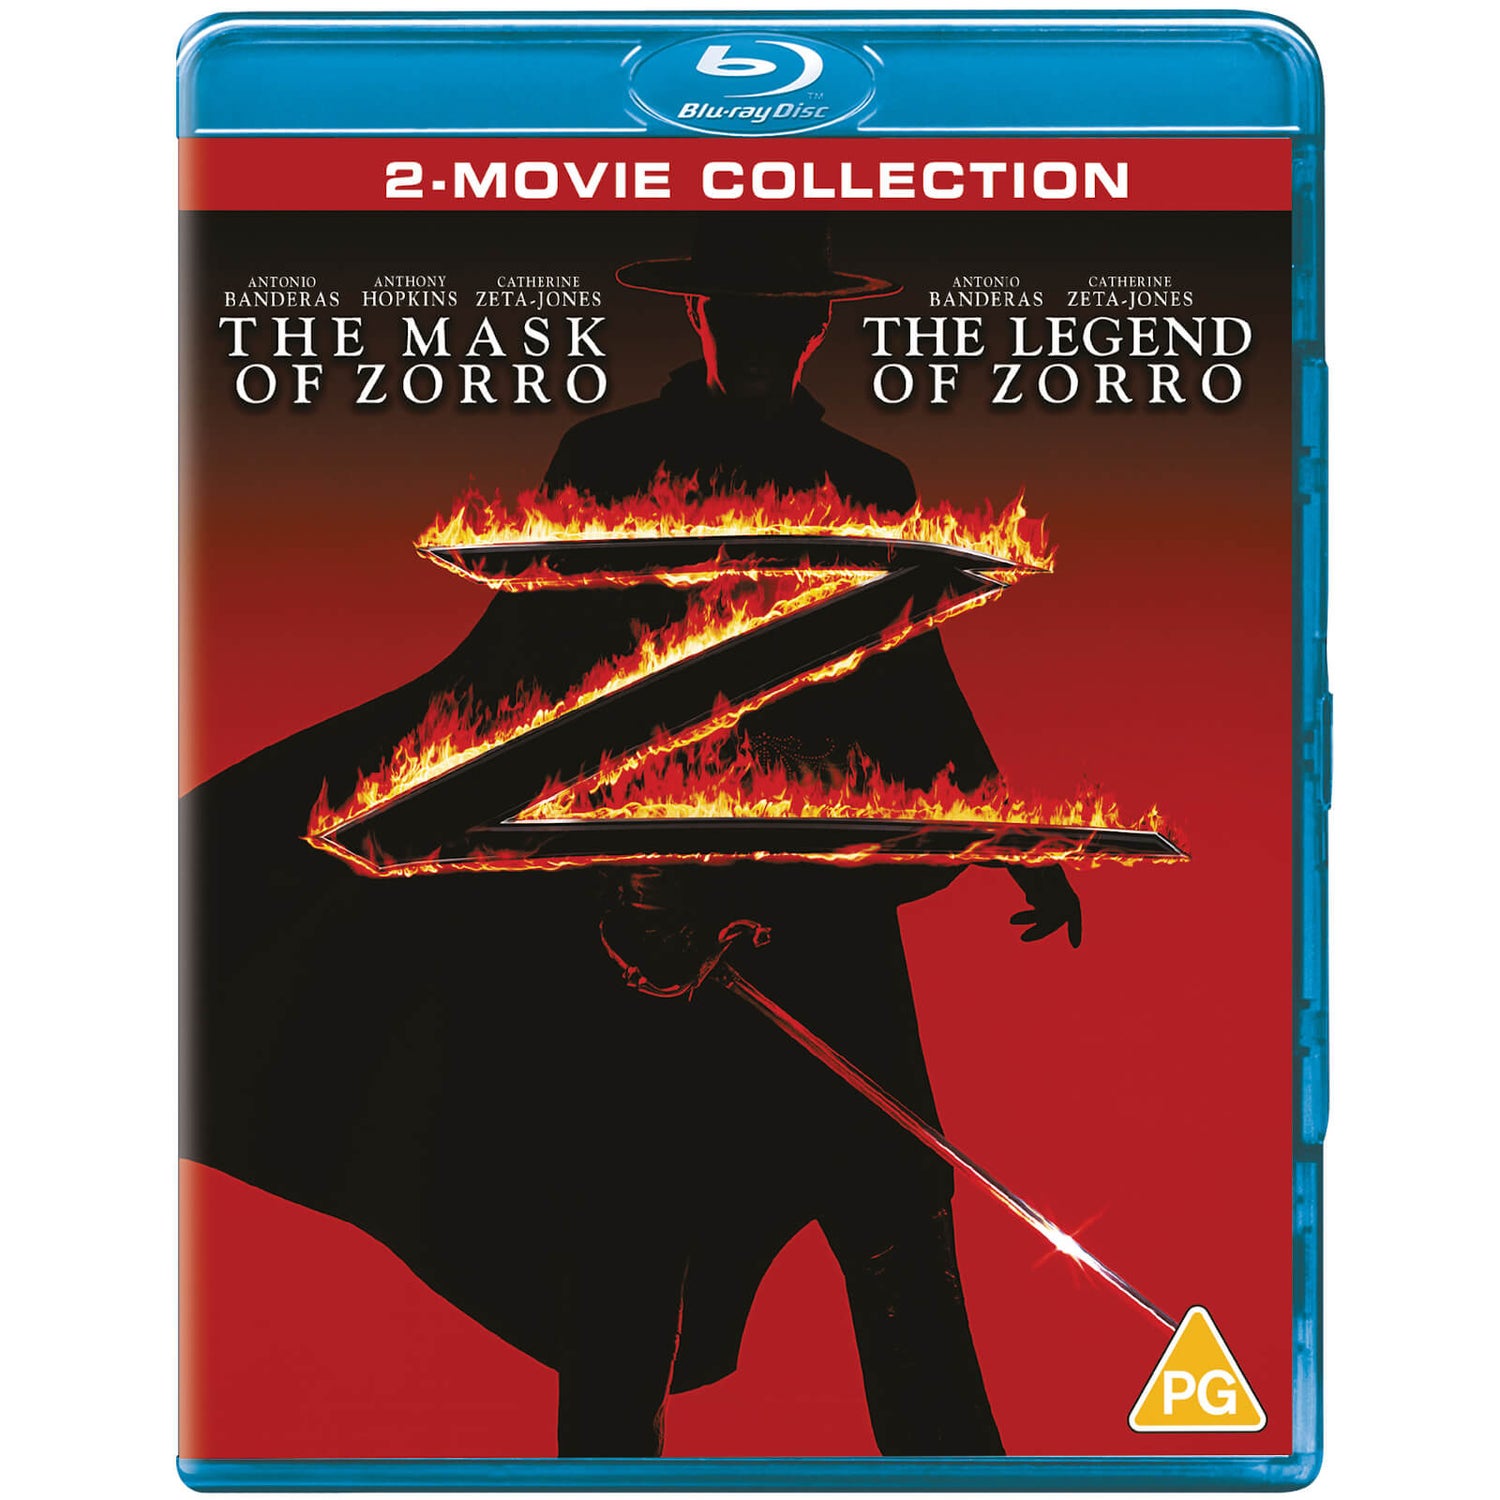 The Legend of Zorro / Mask of Zorro Boxset